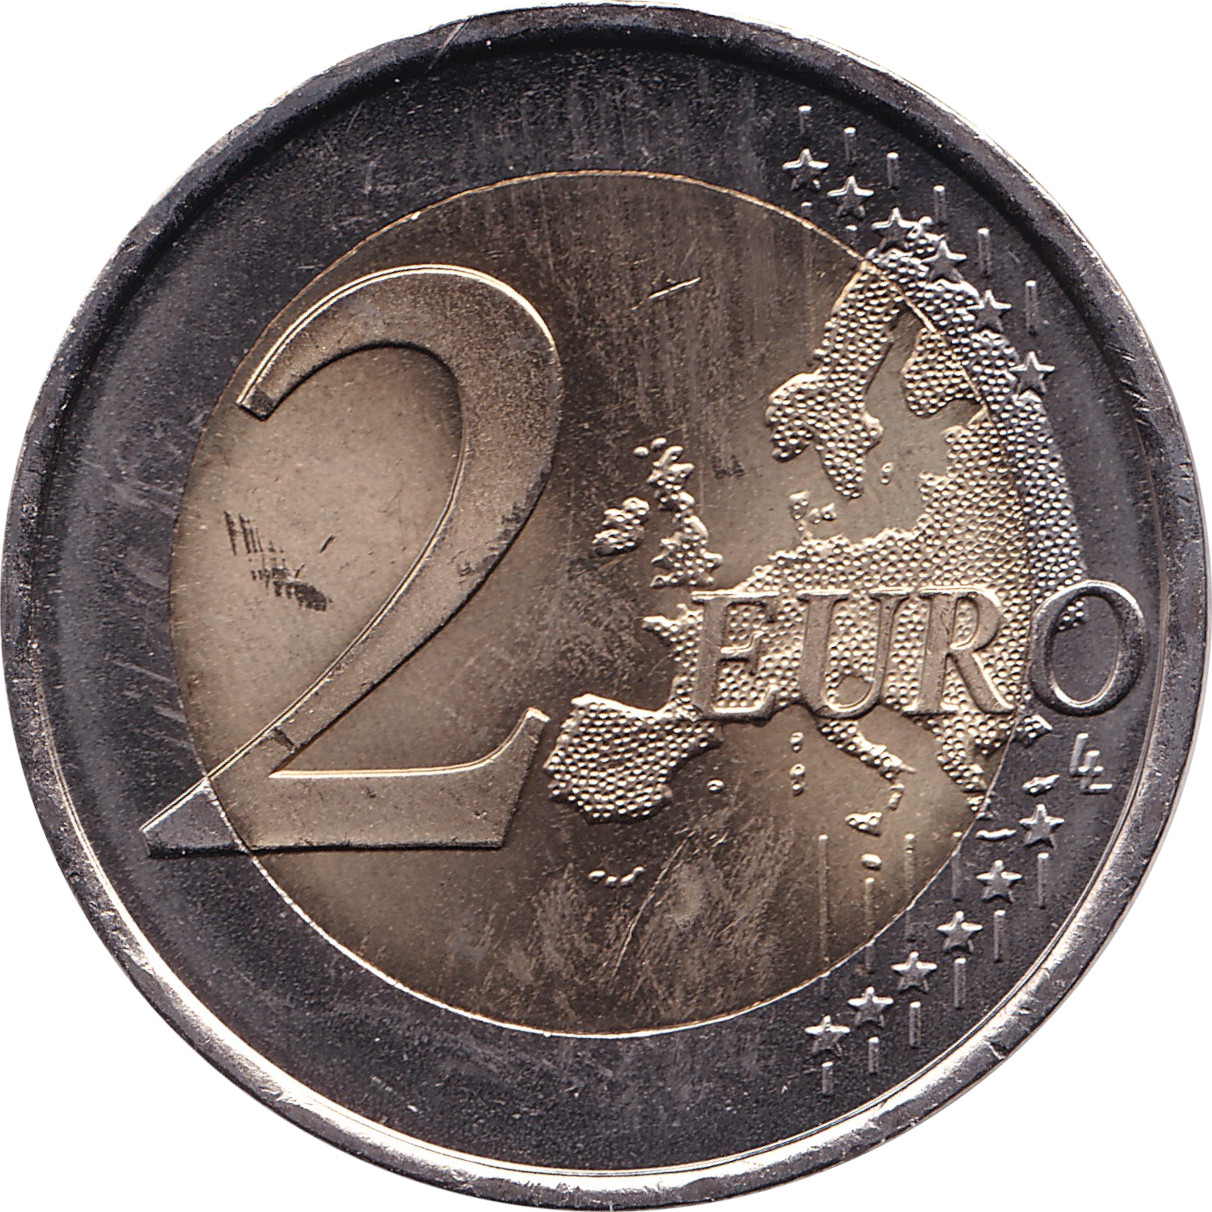 2 euro - Roi Philippe - 50 years